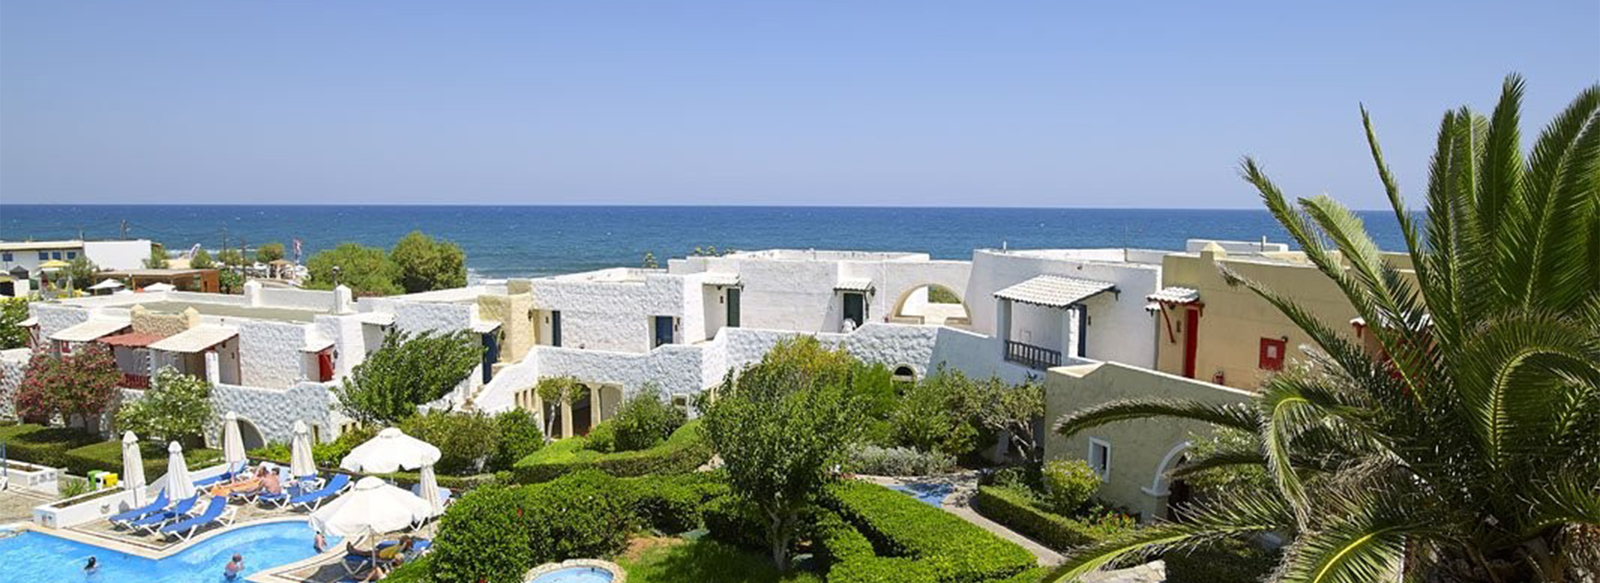 Un villaggio Veraclub incantevole sulla bellissima costa cretese